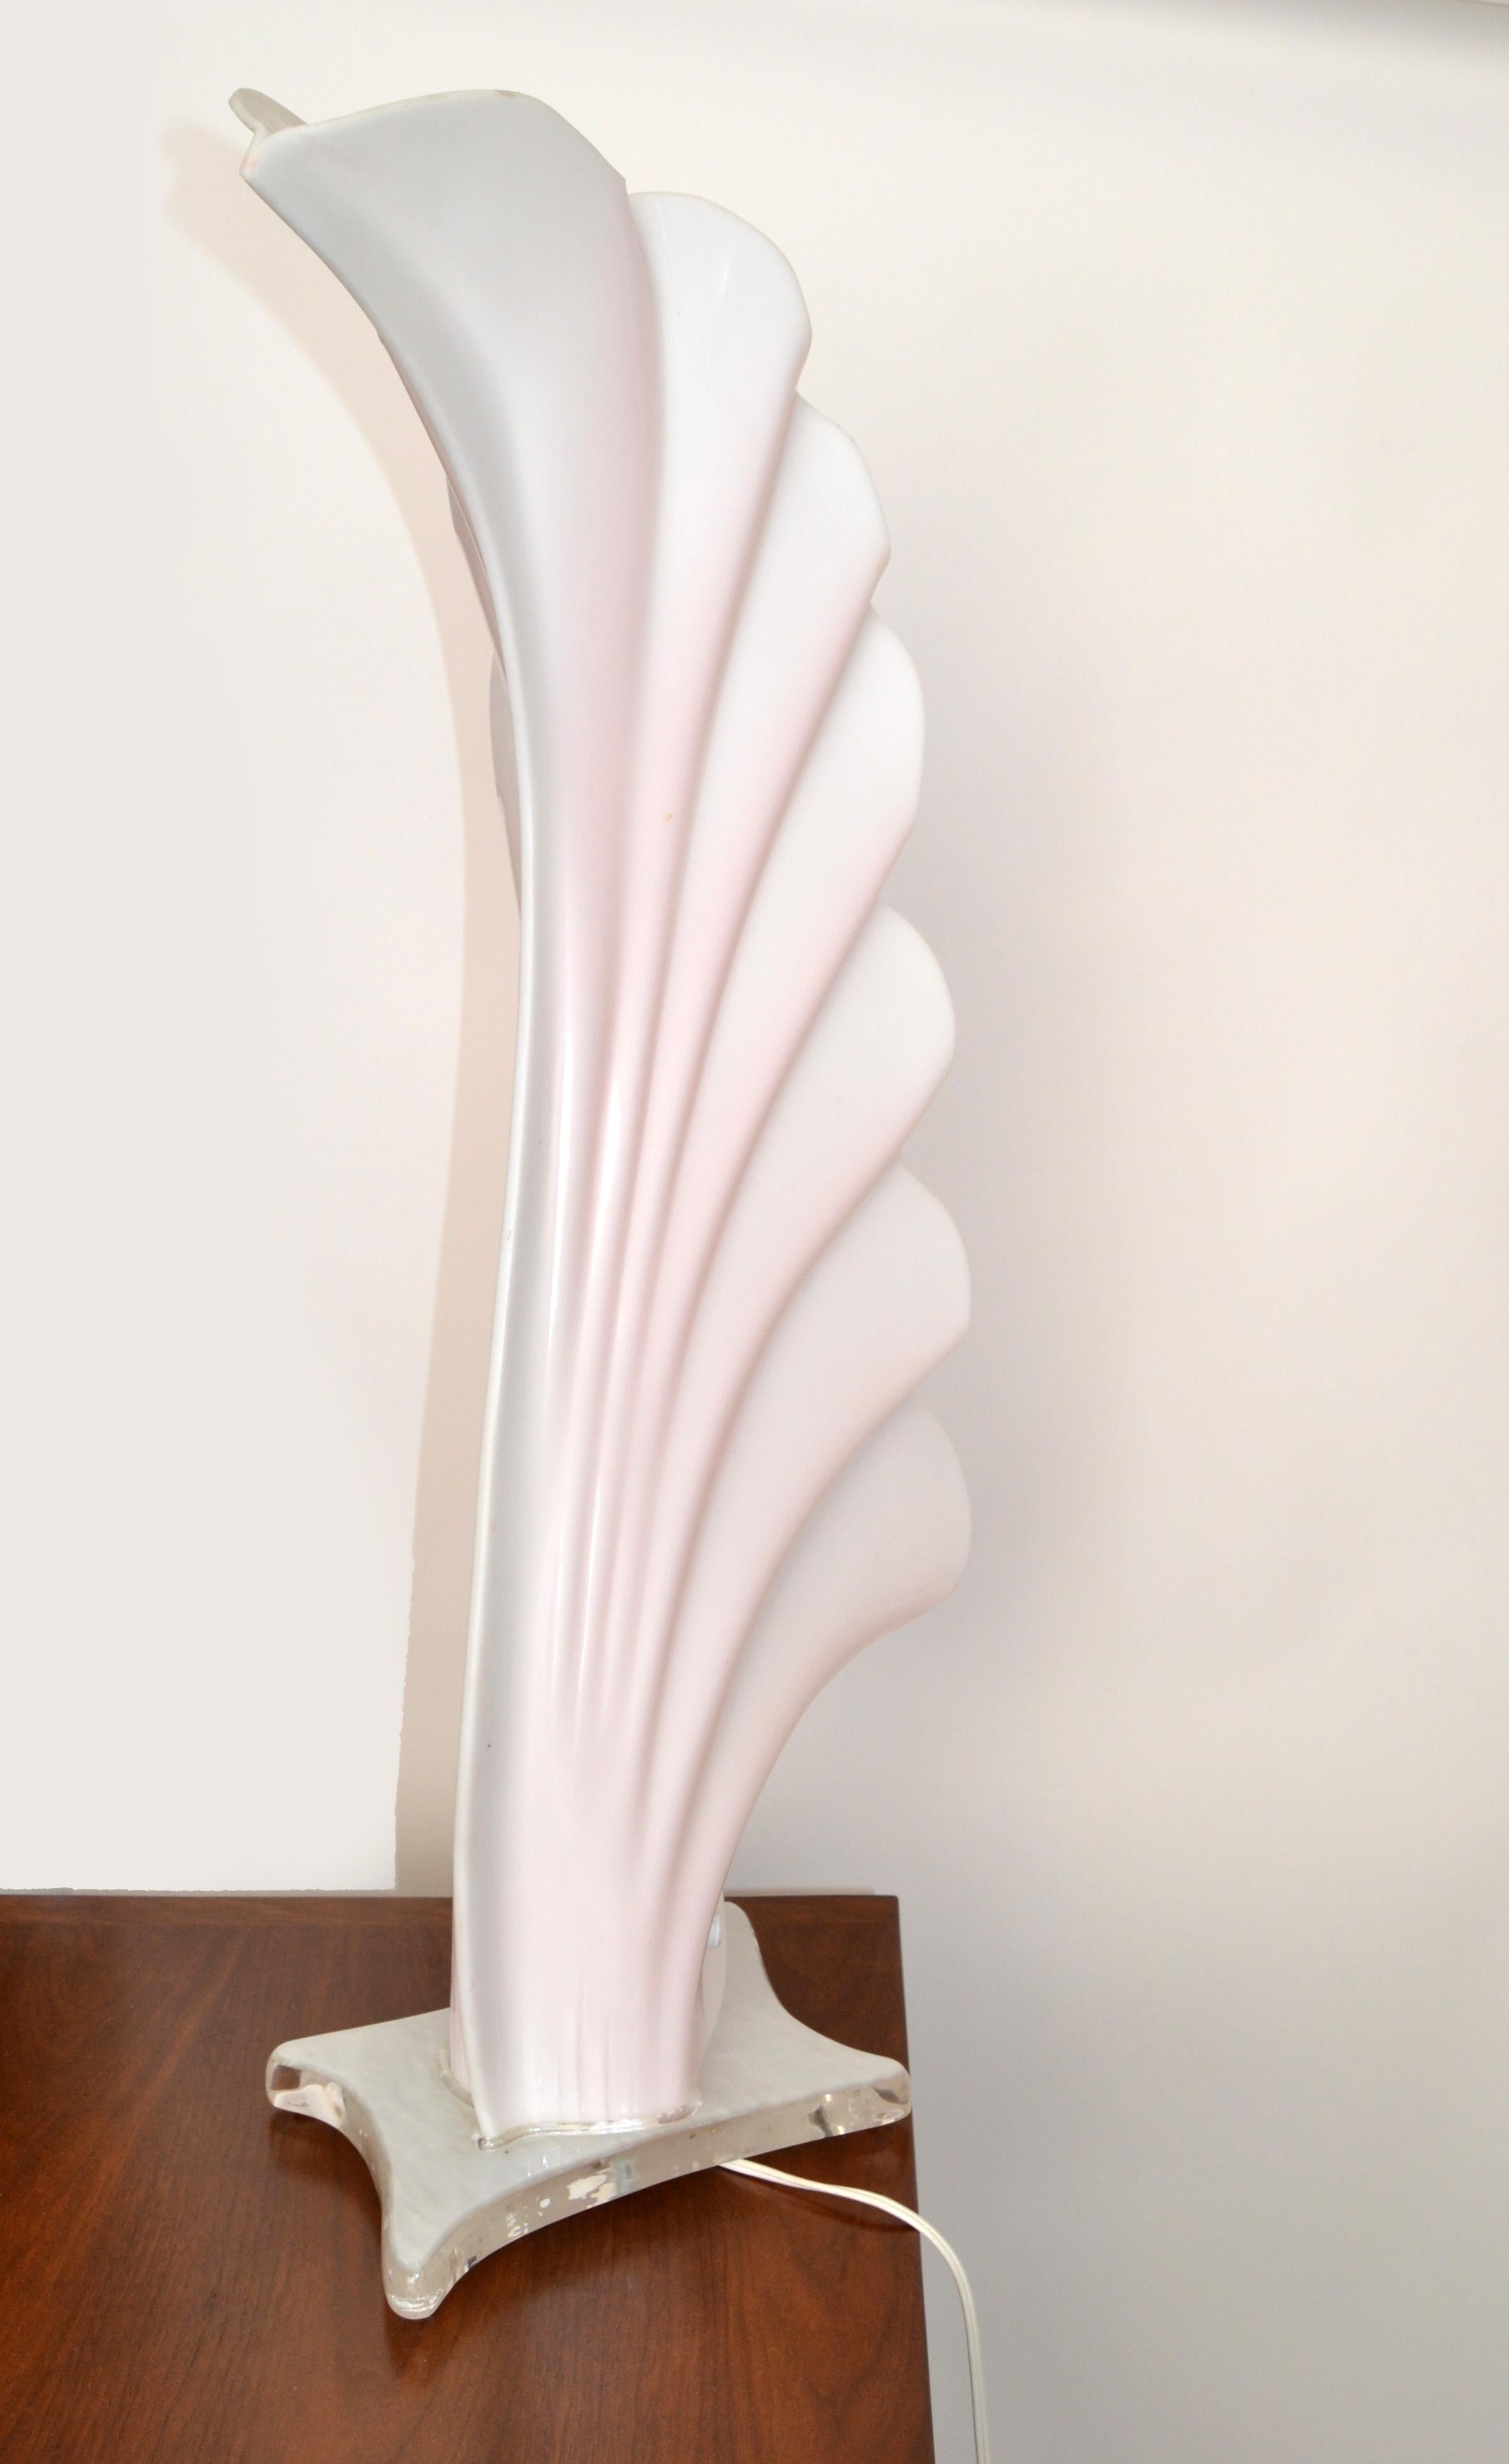 Monumentale Tischleuchte aus rosa und weißem Acryl von Roger Rougier aus Kanada.
US Verdrahtung mit Porzellansockel und nimmt eine normale oder LED-Glühbirne max. 60 Watt.
Die Basis misst: 10 x 7 Zoll.
In gutem Vintage-Zustand mit nur leichten